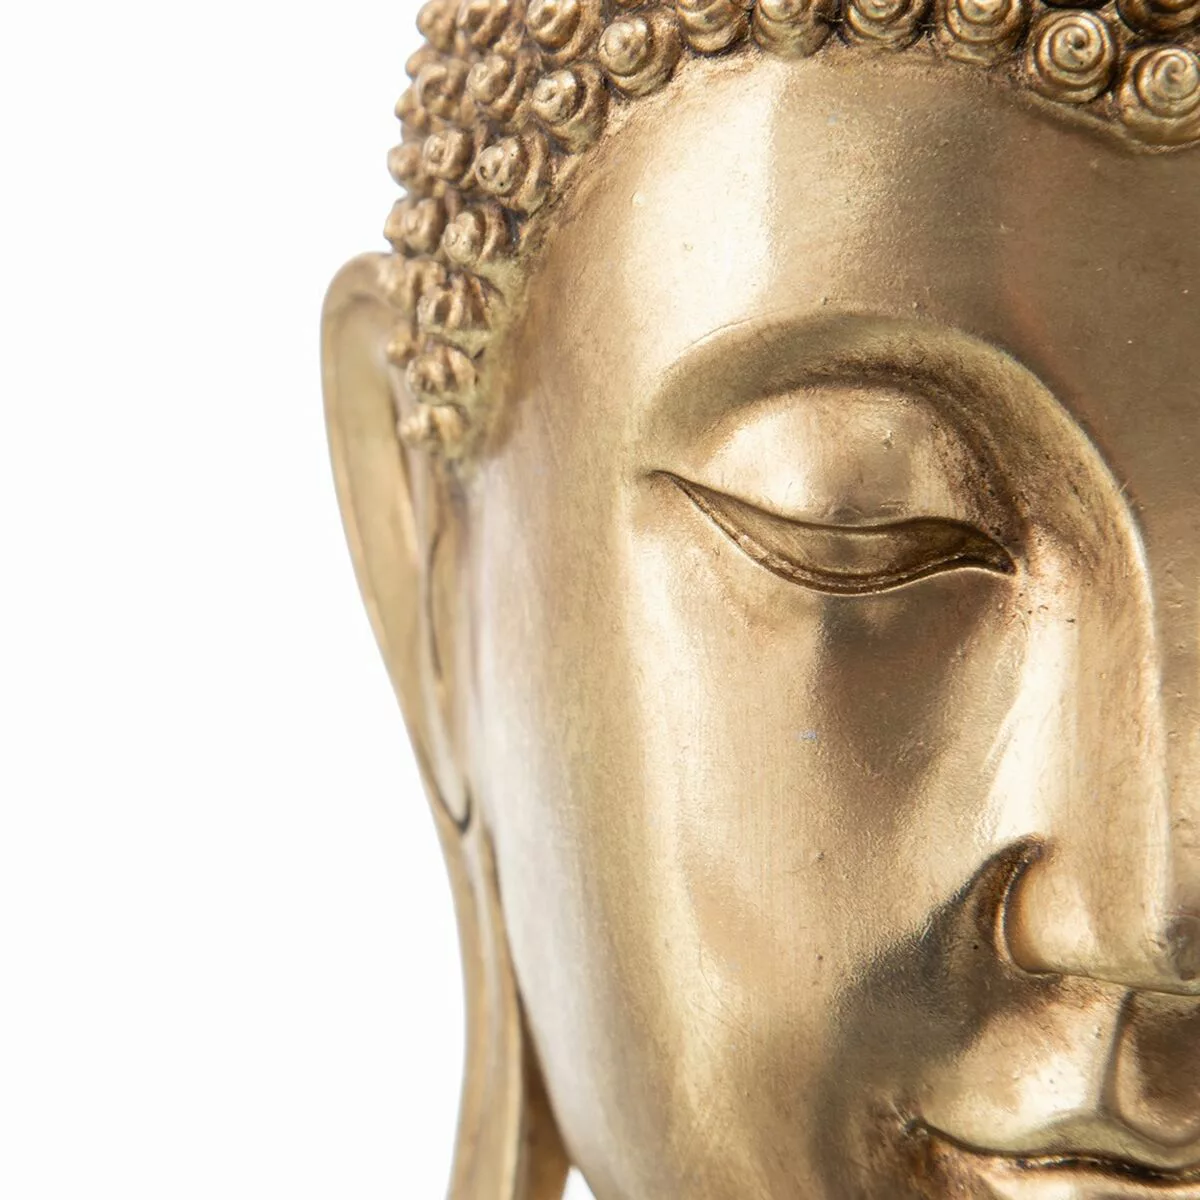 Deko-figur 16,5 X 15 X 31 Cm Buddha günstig online kaufen